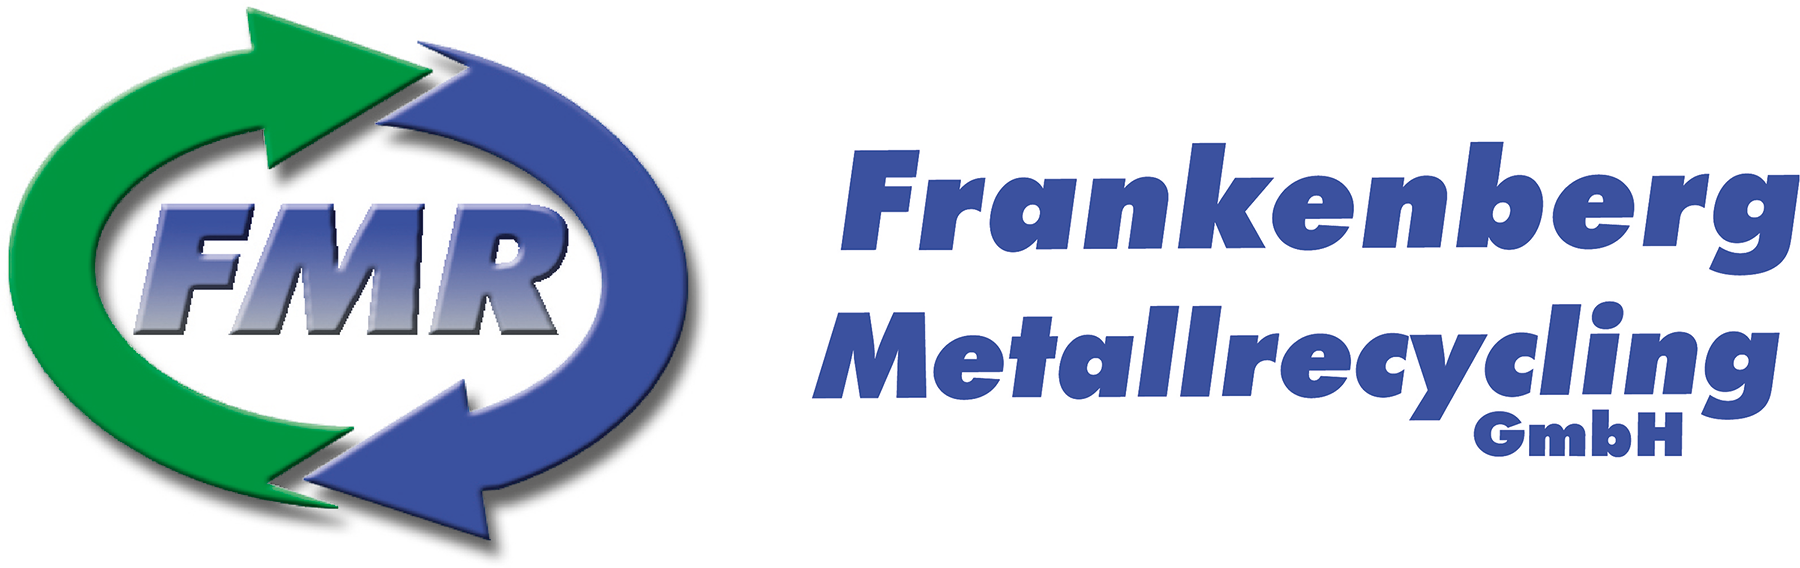 FMR - Frankenberg-Metallrecycling GmbH